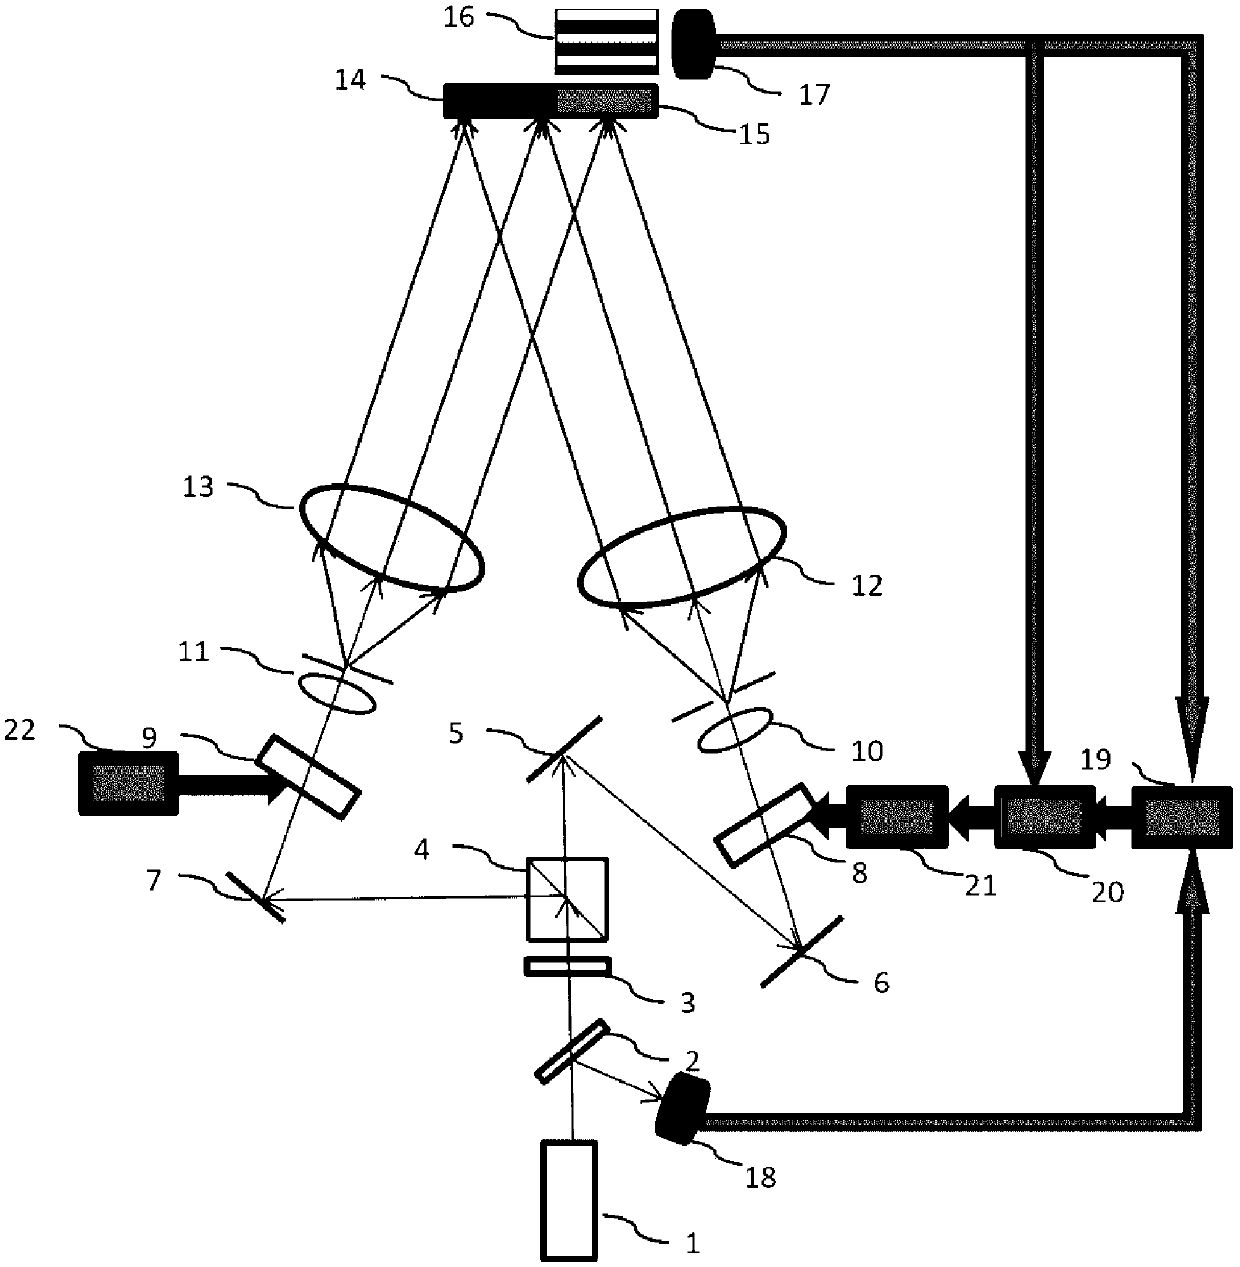 Fringe locking type holographic interference photoetching system and fringe locking method